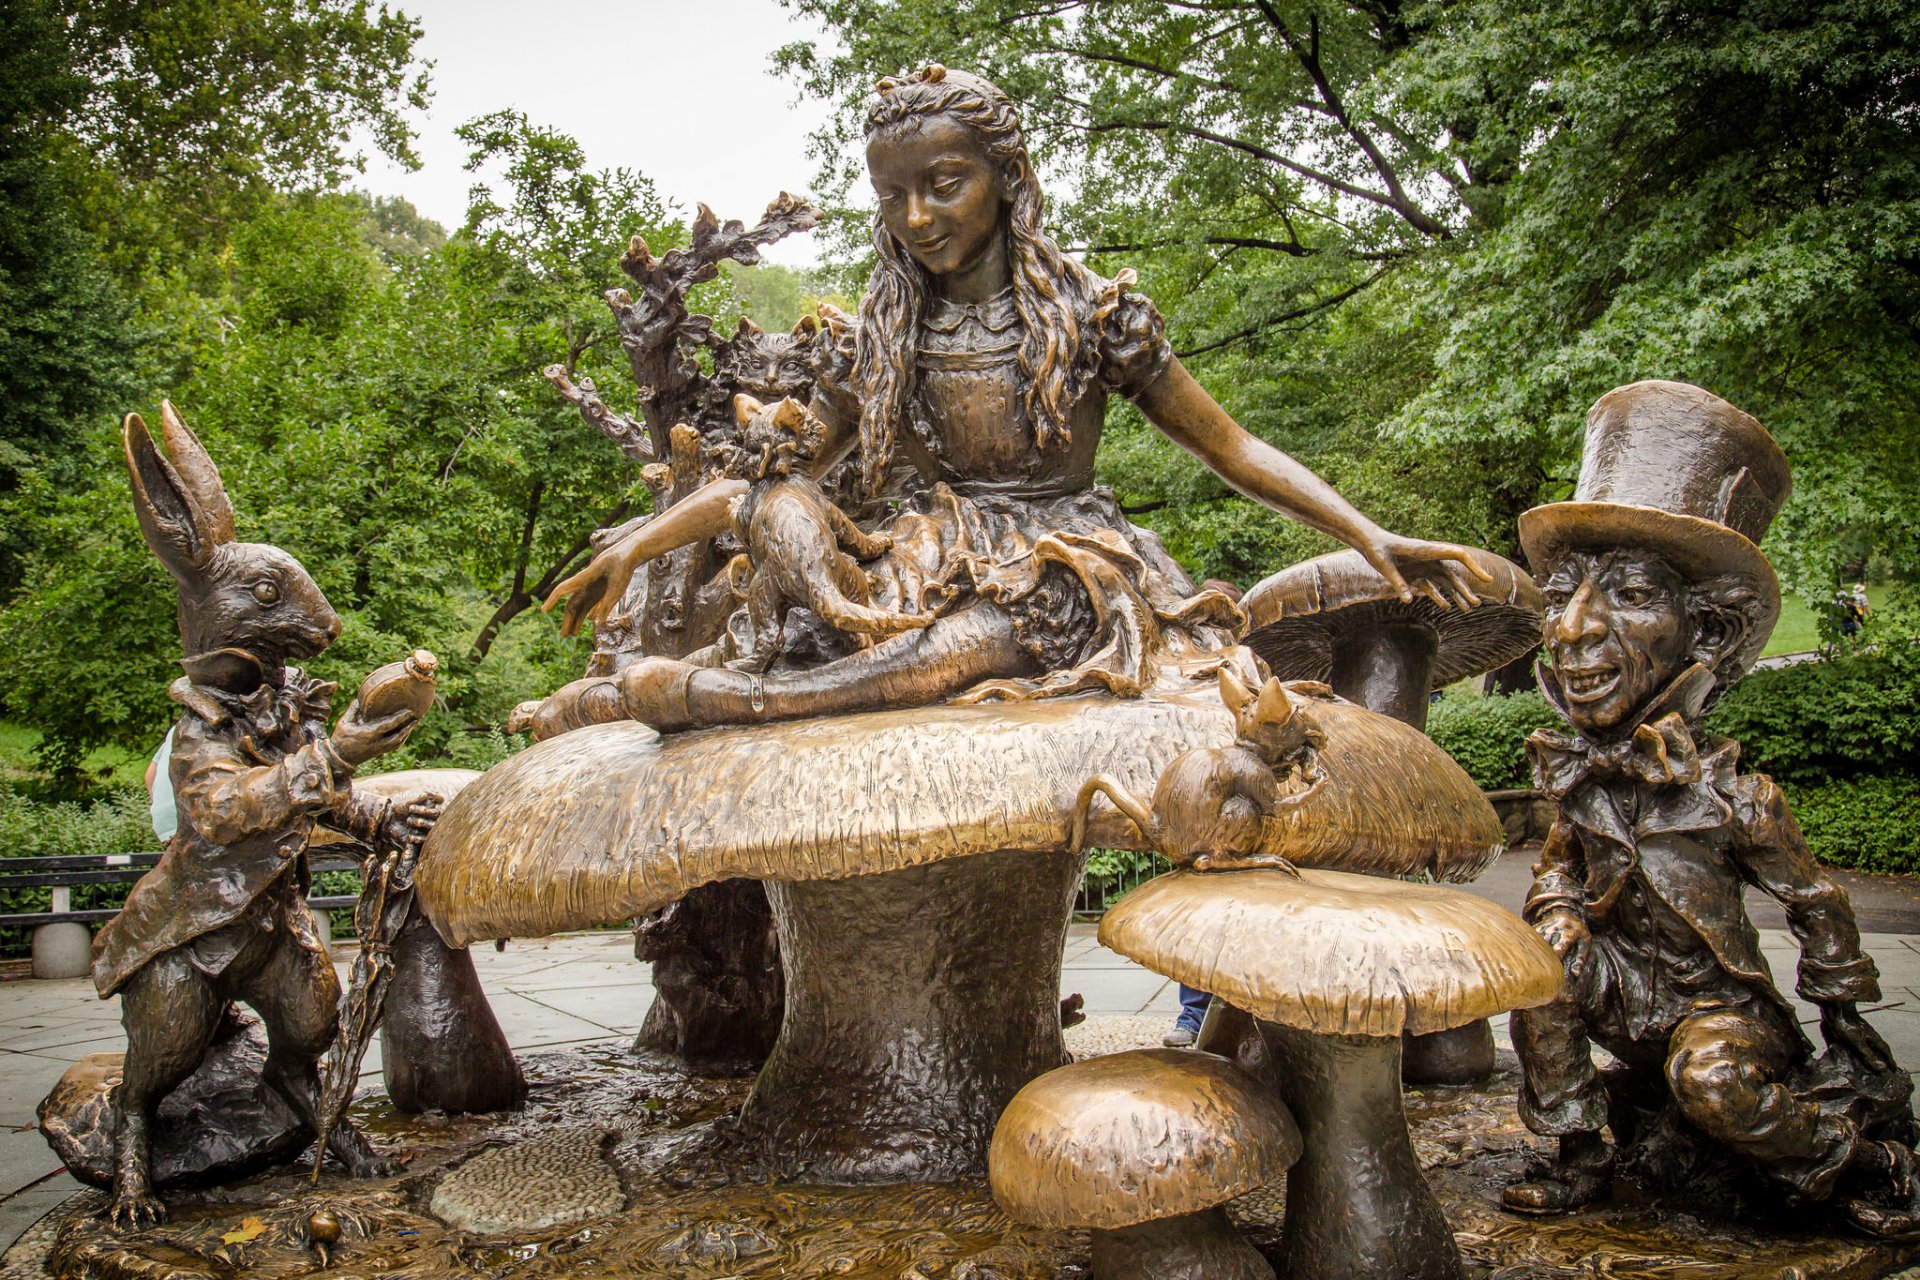 Памятник Алисе в стране чудес в Нью-Йорке